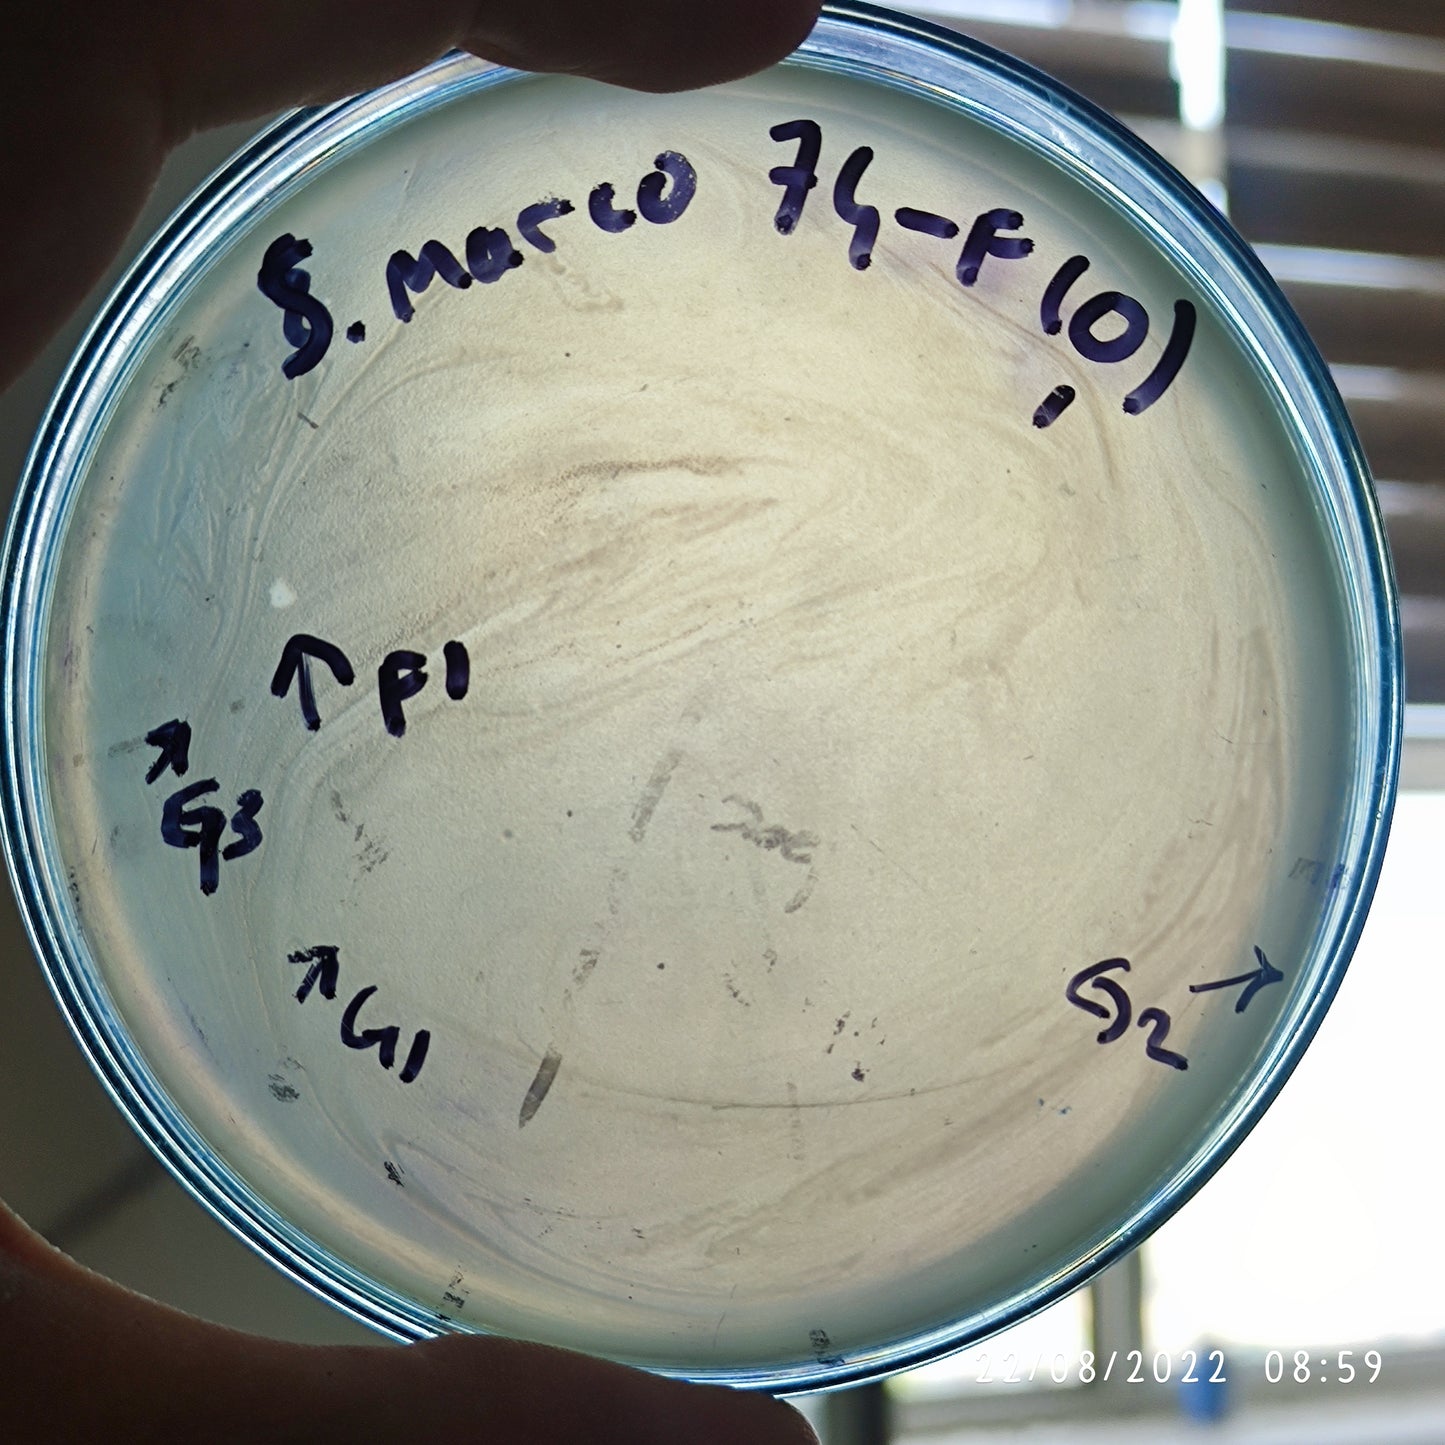 Serratia marcescens bacteriophage 200074F